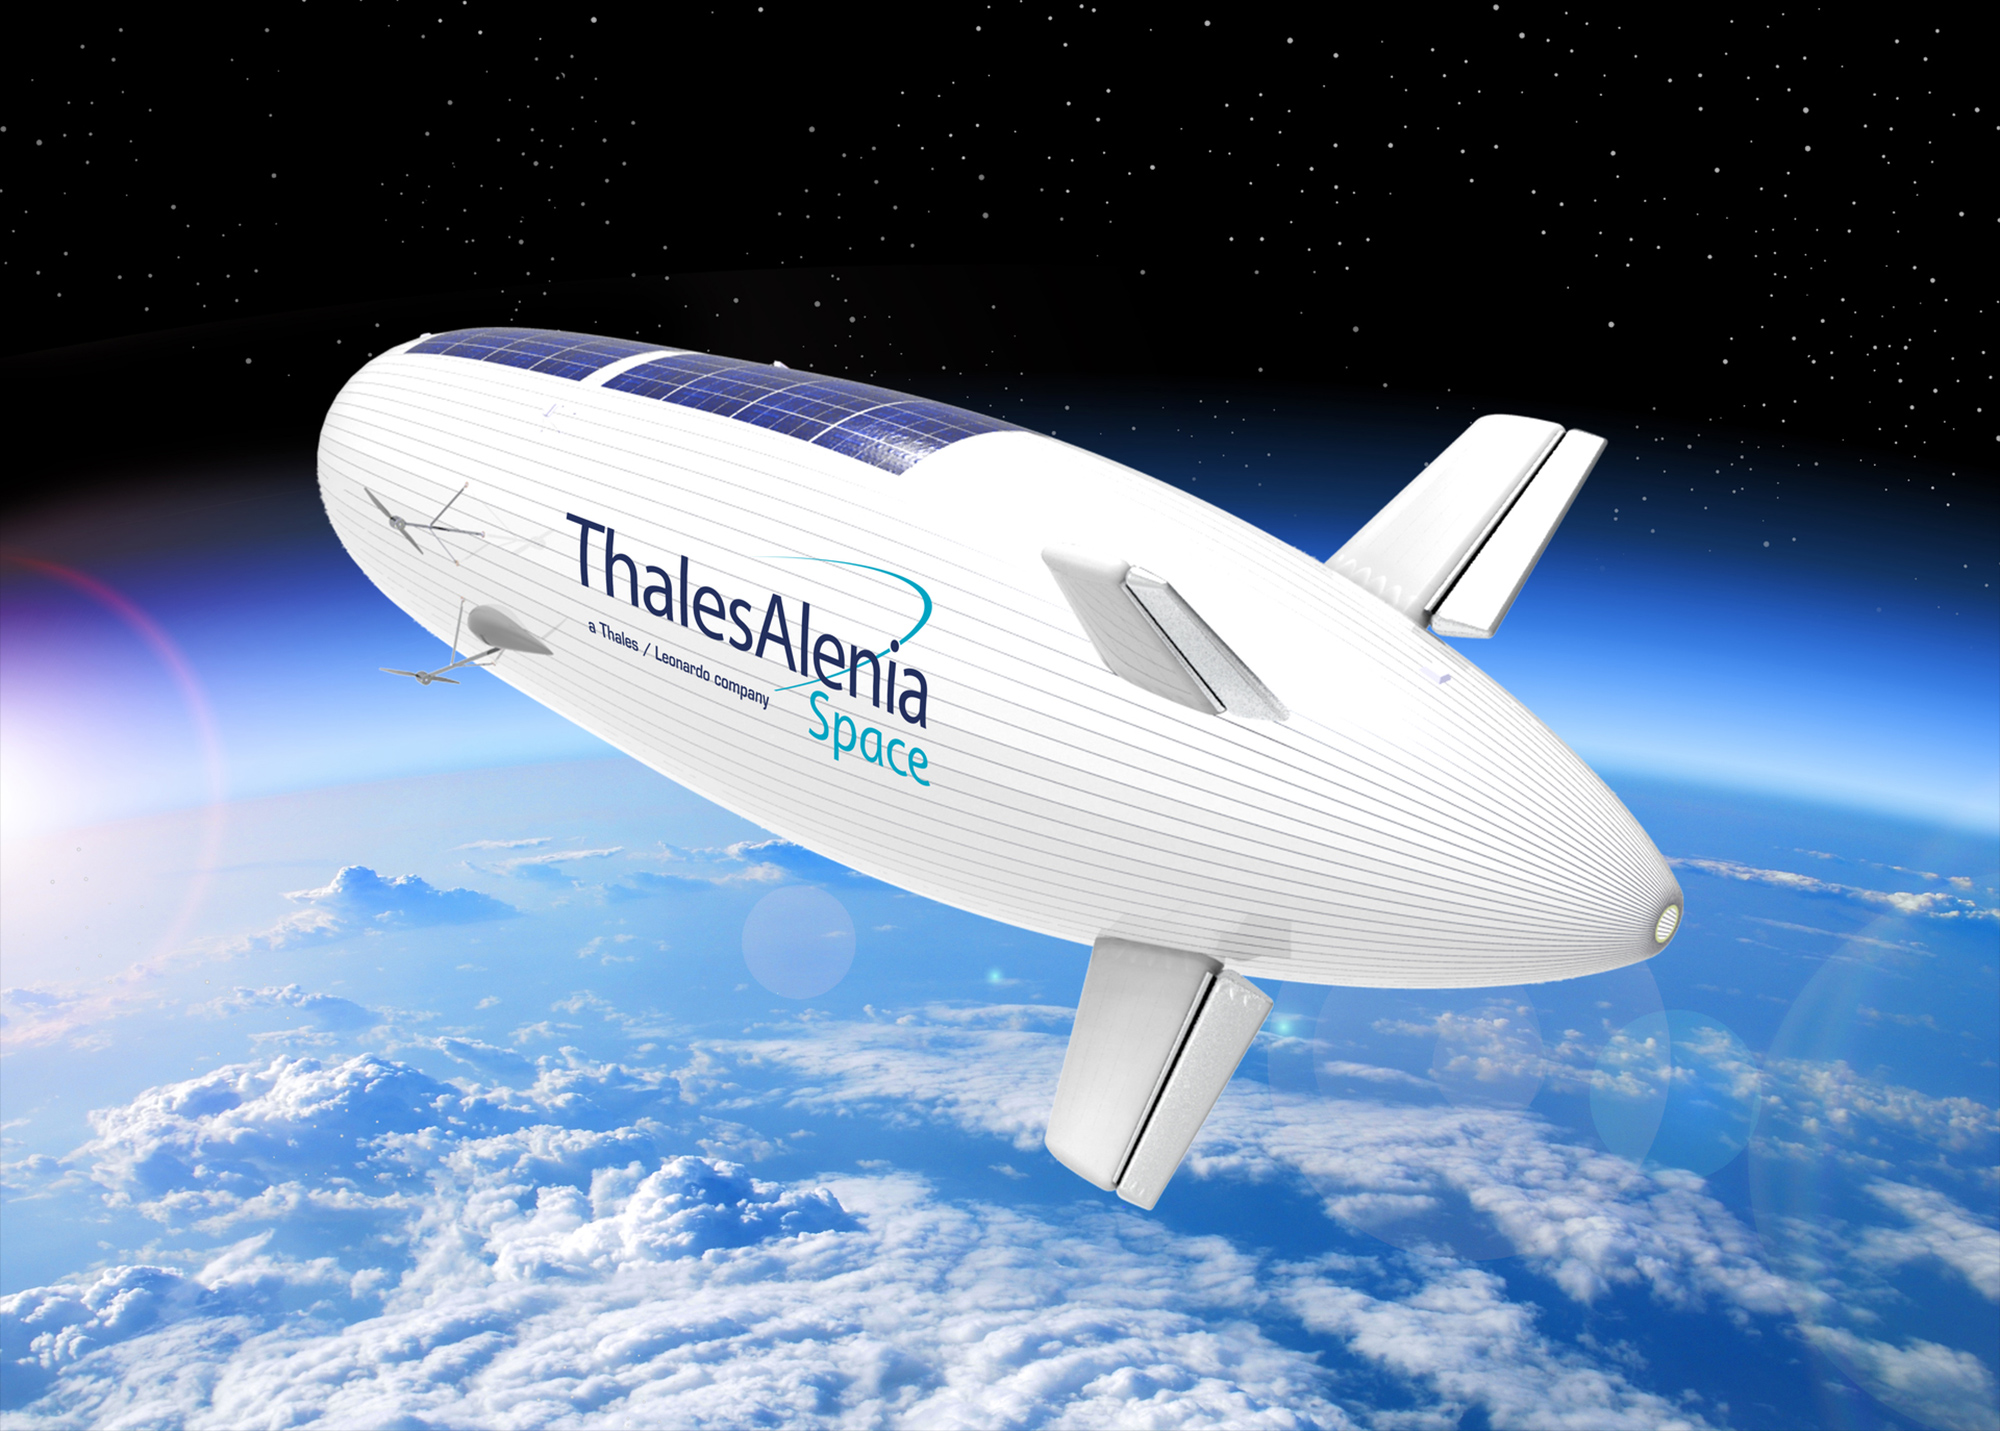 Stratobus, le dirigeable stratosphérique de Thales Alenia Space, peut être vu comme le « chaînon manquant » entre les drones et les satellites. © Thales Alenia Space